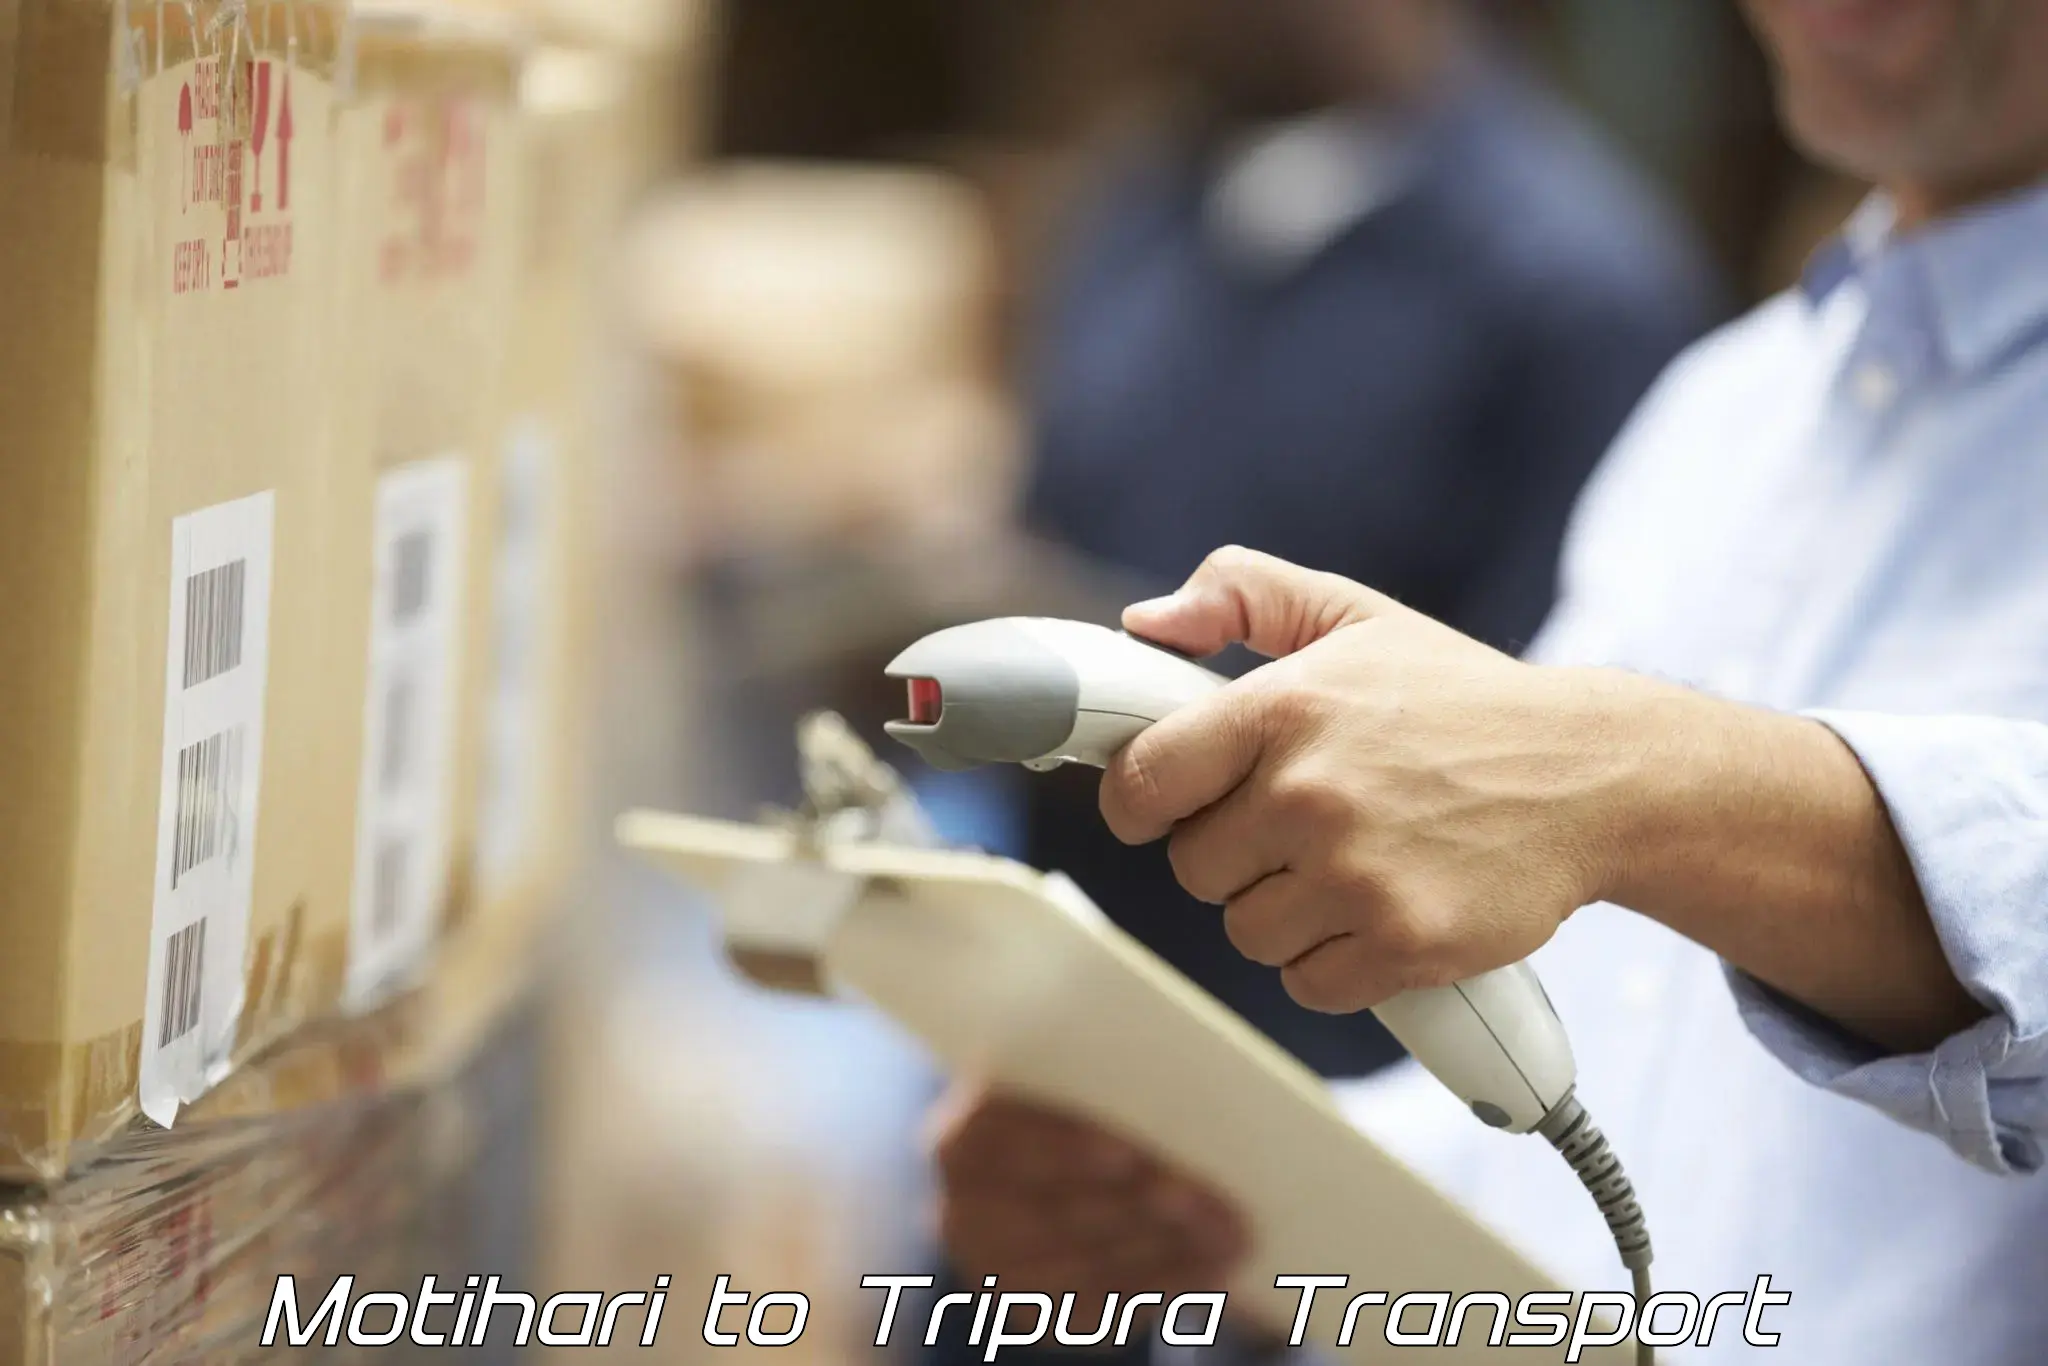 India truck logistics services Motihari to Tripura